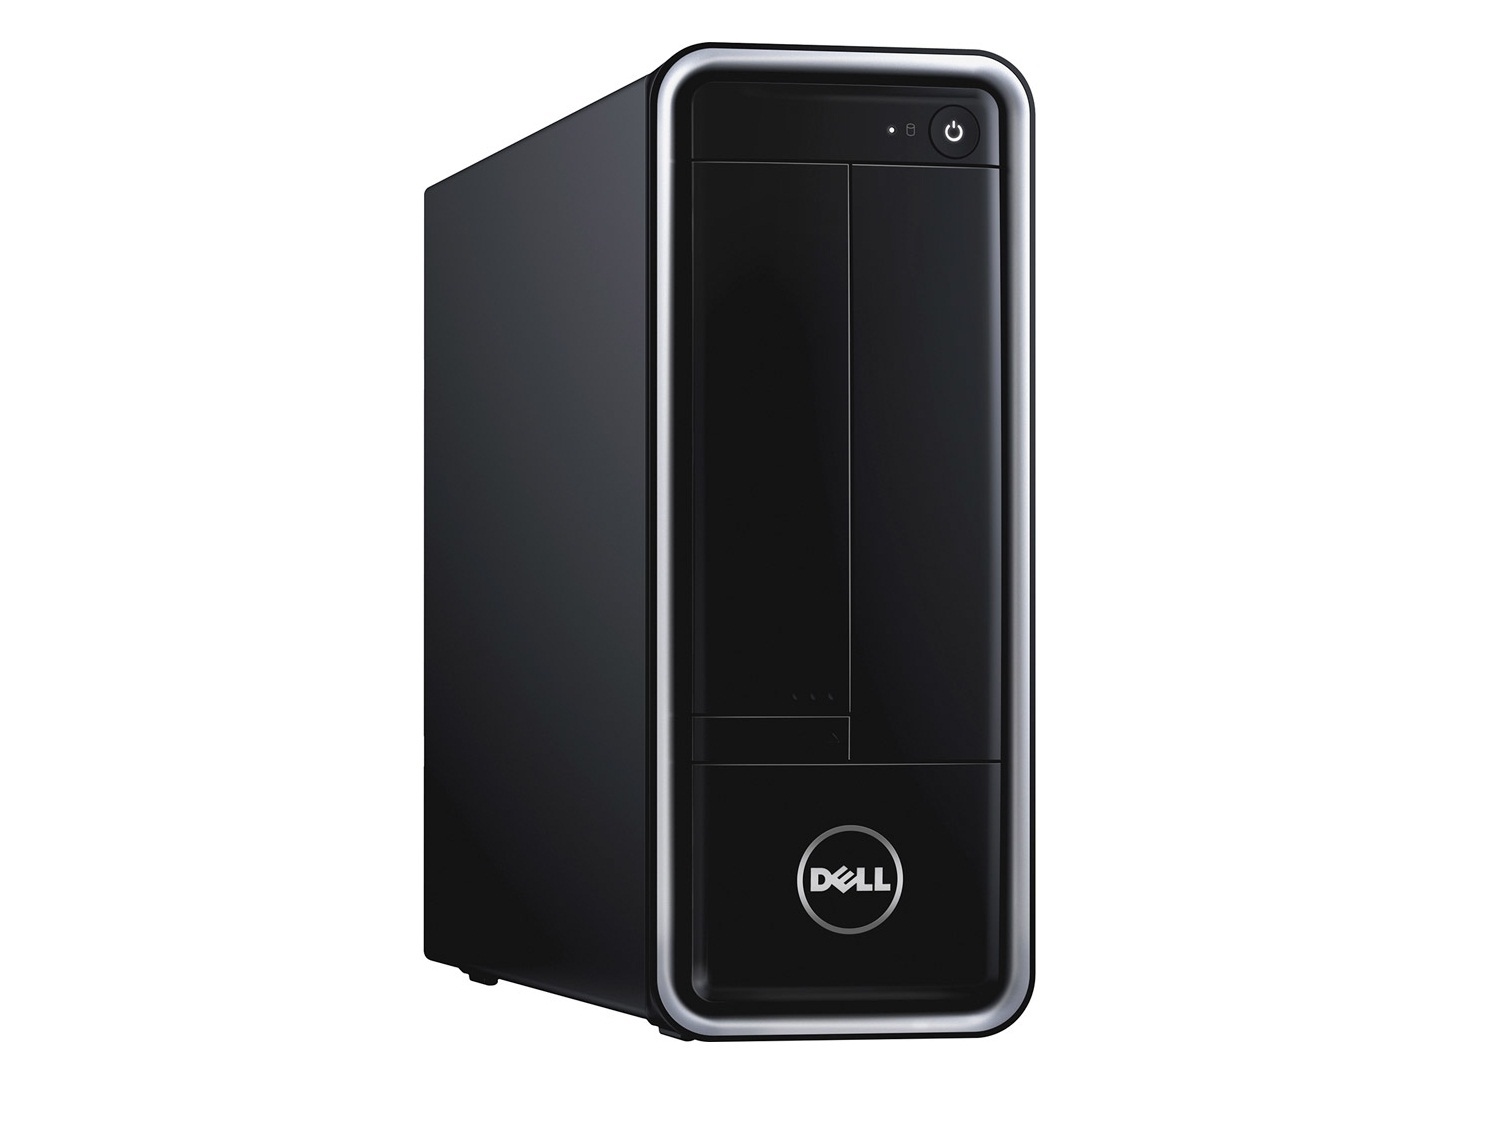 Máy tính để bàn Dell Inspiron 3647ST (I93ND14) - Intel Core i3-4170 3.70 GHz, 4GB DDR3, 500GB HDD, VGA Intel HD Graphics 4400